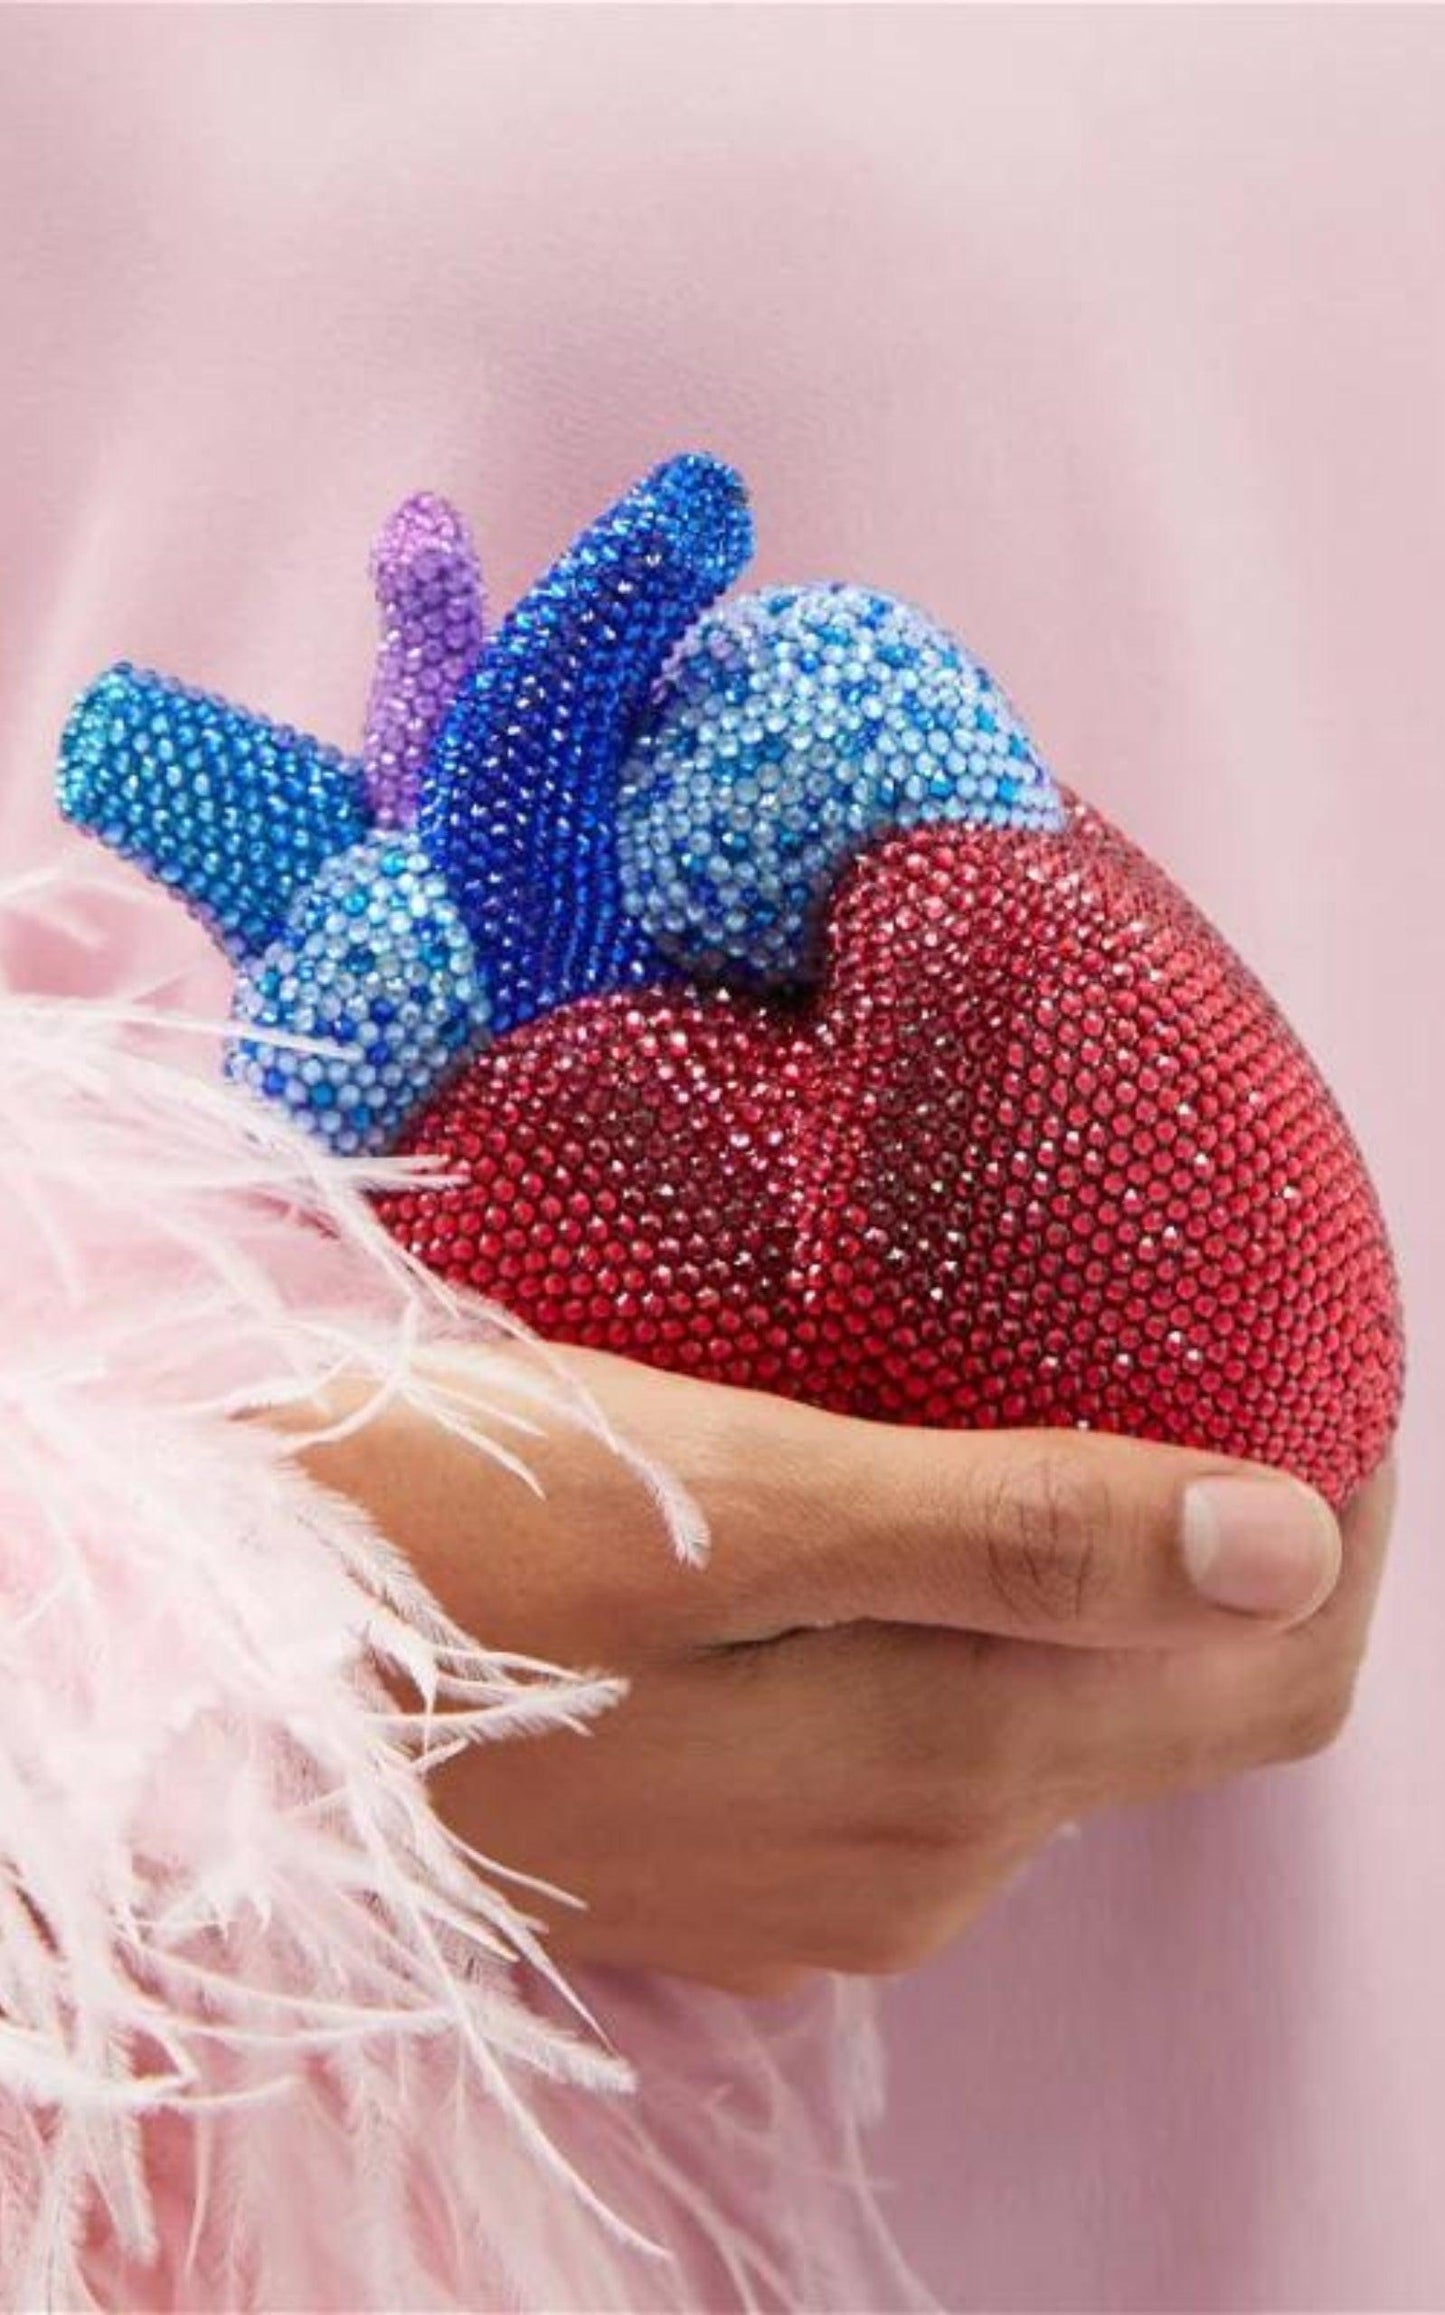 Broadway Heart Crystal-Embellished Clutch Bag